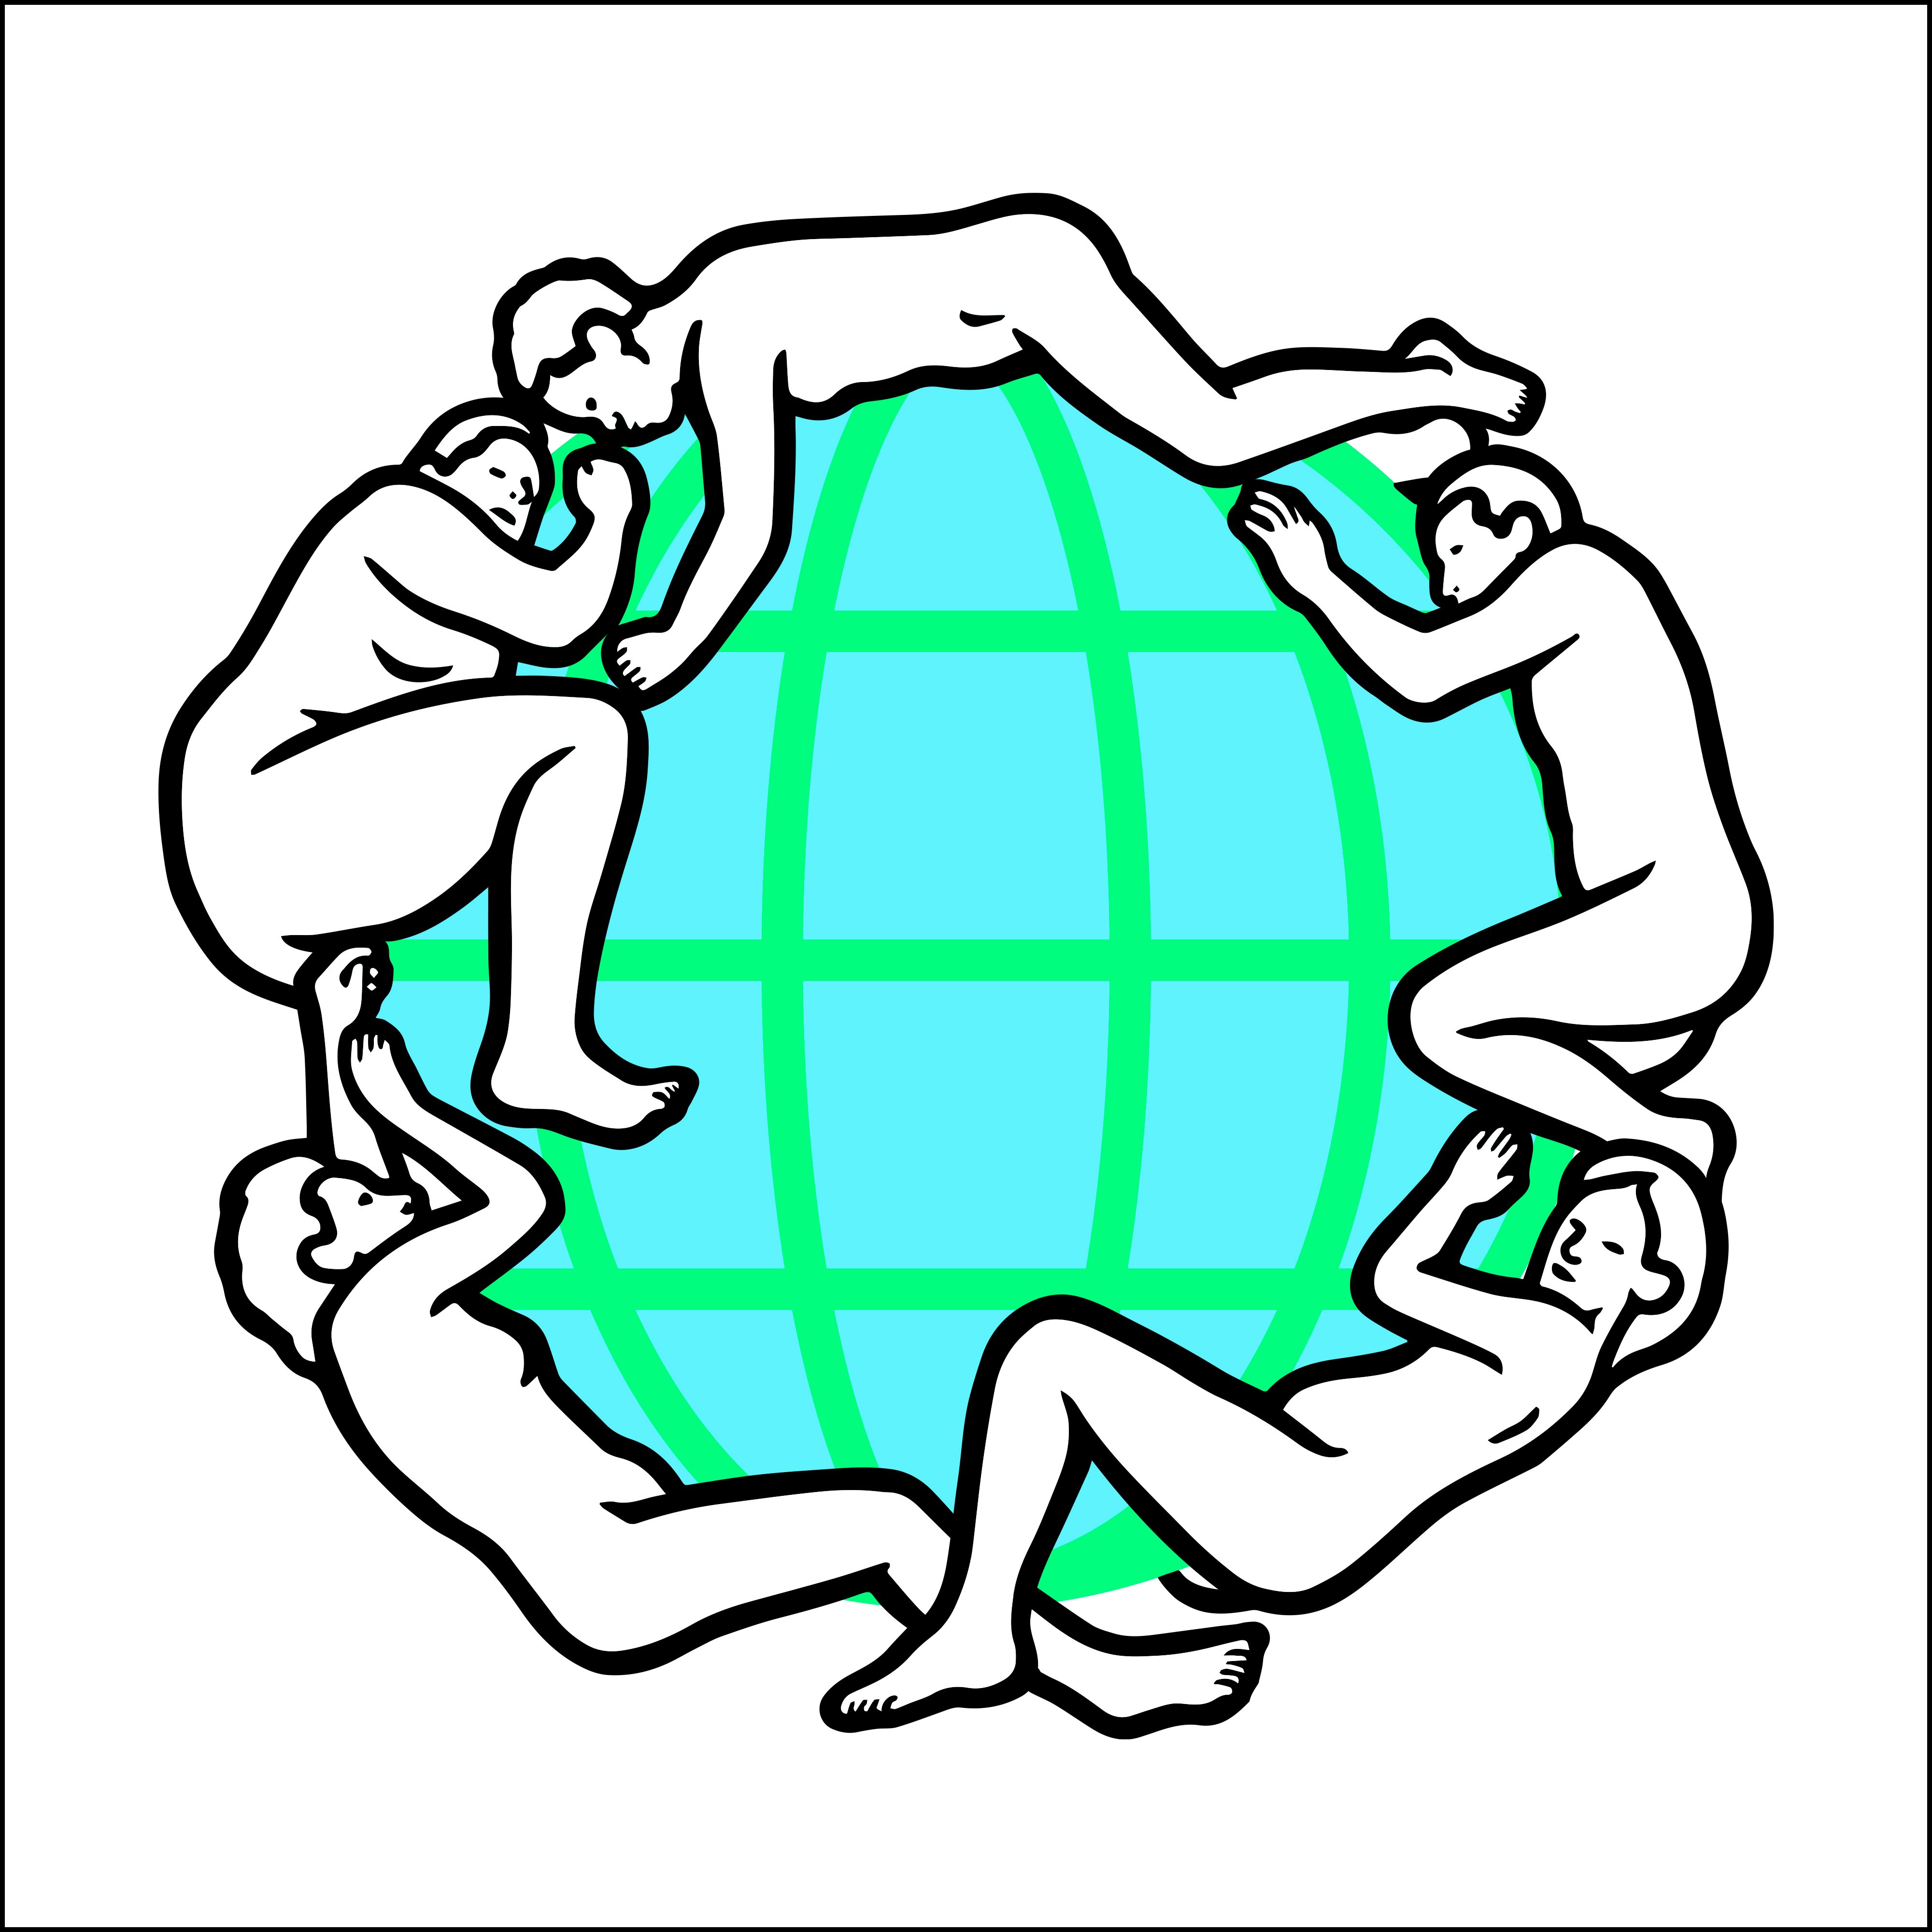 gucci circle logo